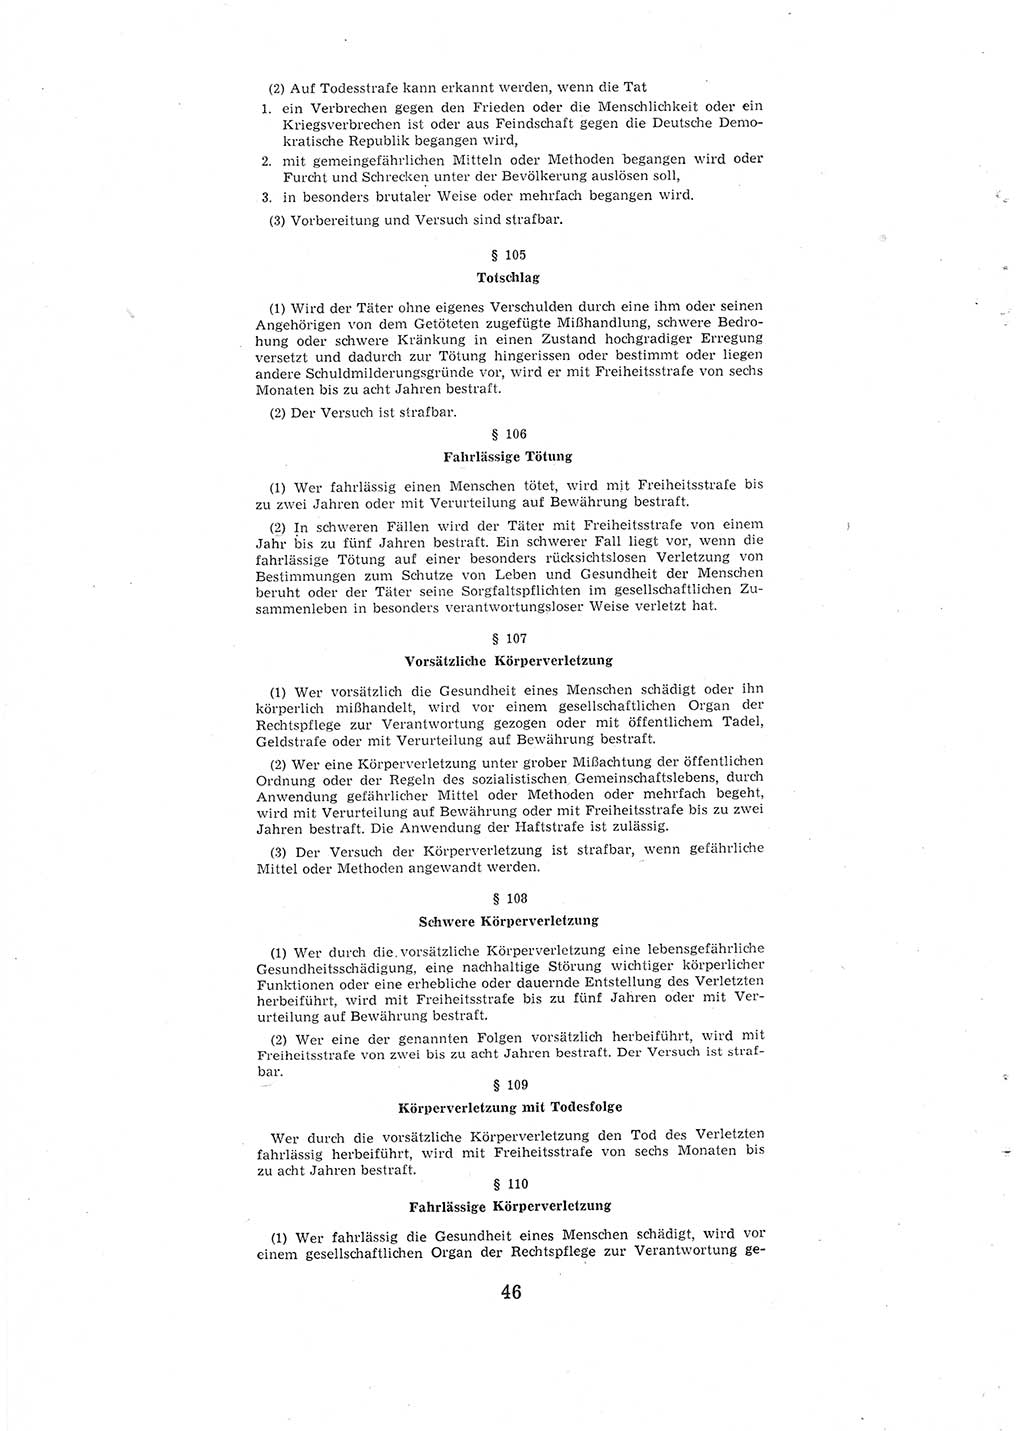 Entwurf des Strafgesetzbuches (StGB) der Deutschen Demokratischen Republik (DDR) 1967, Seite 46 (Entw. StGB DDR 1967, S. 46)